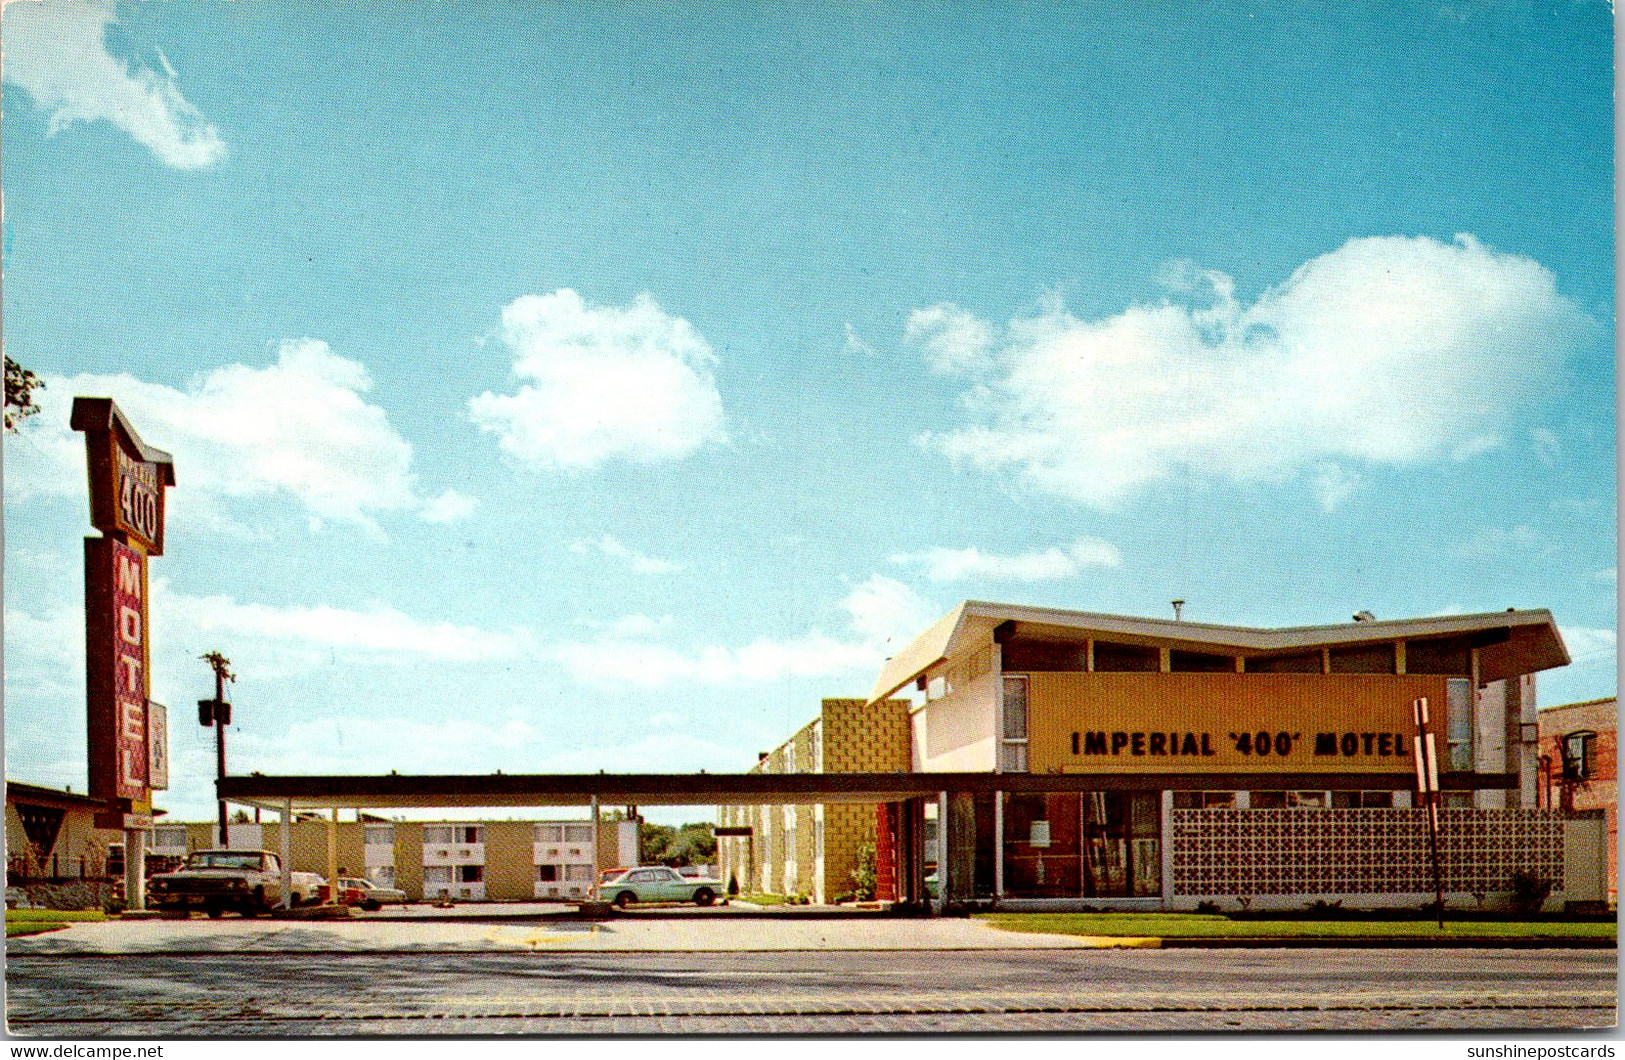 Imperial '400' Motel Minneapolis Minnesota - Minneapolis